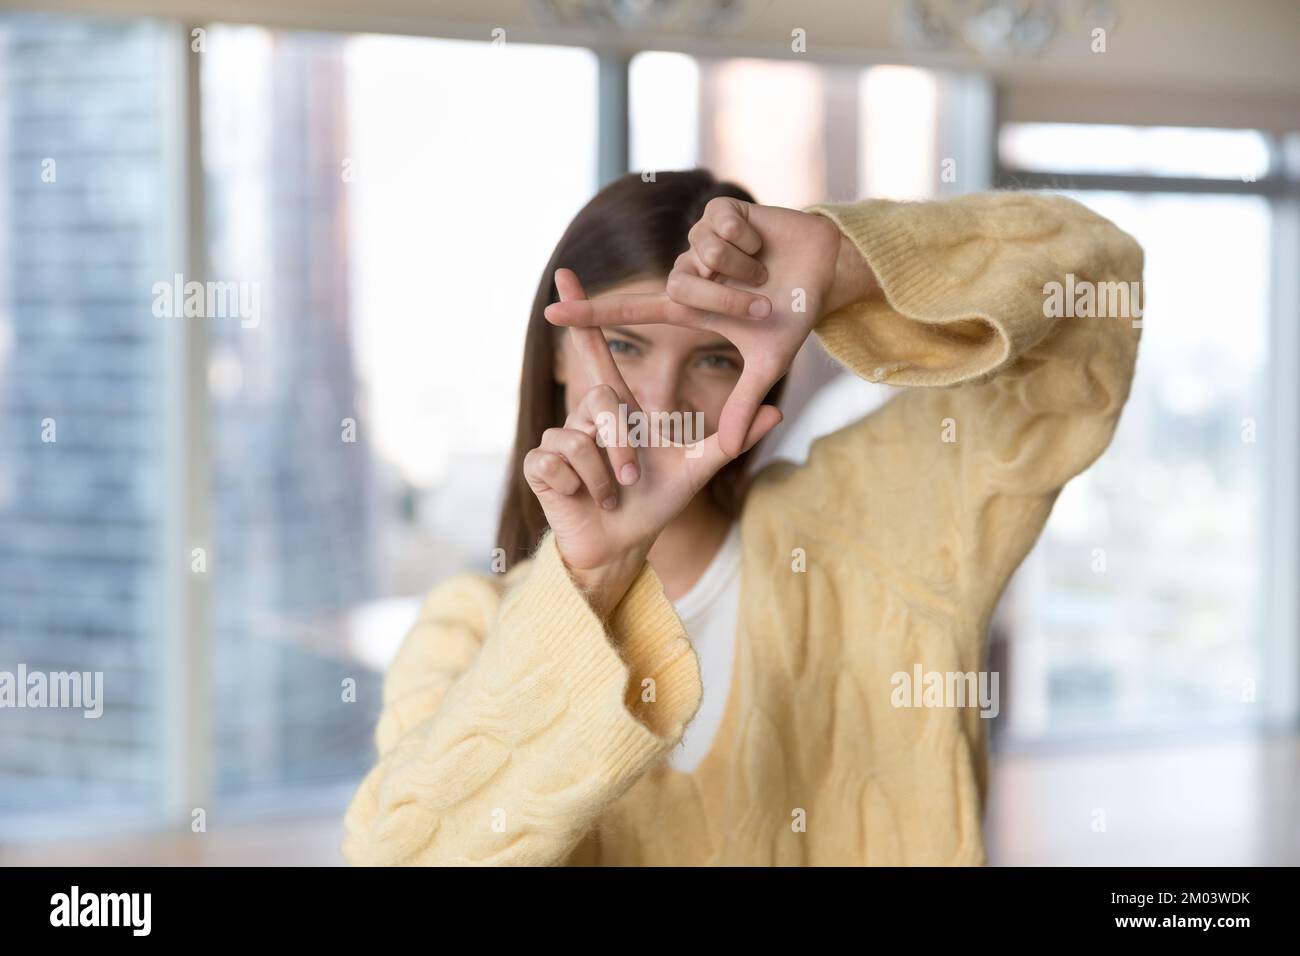 Hübsches, junges Mädchen in warmem Pullover, das ein Fingerfoto macht Stockfoto